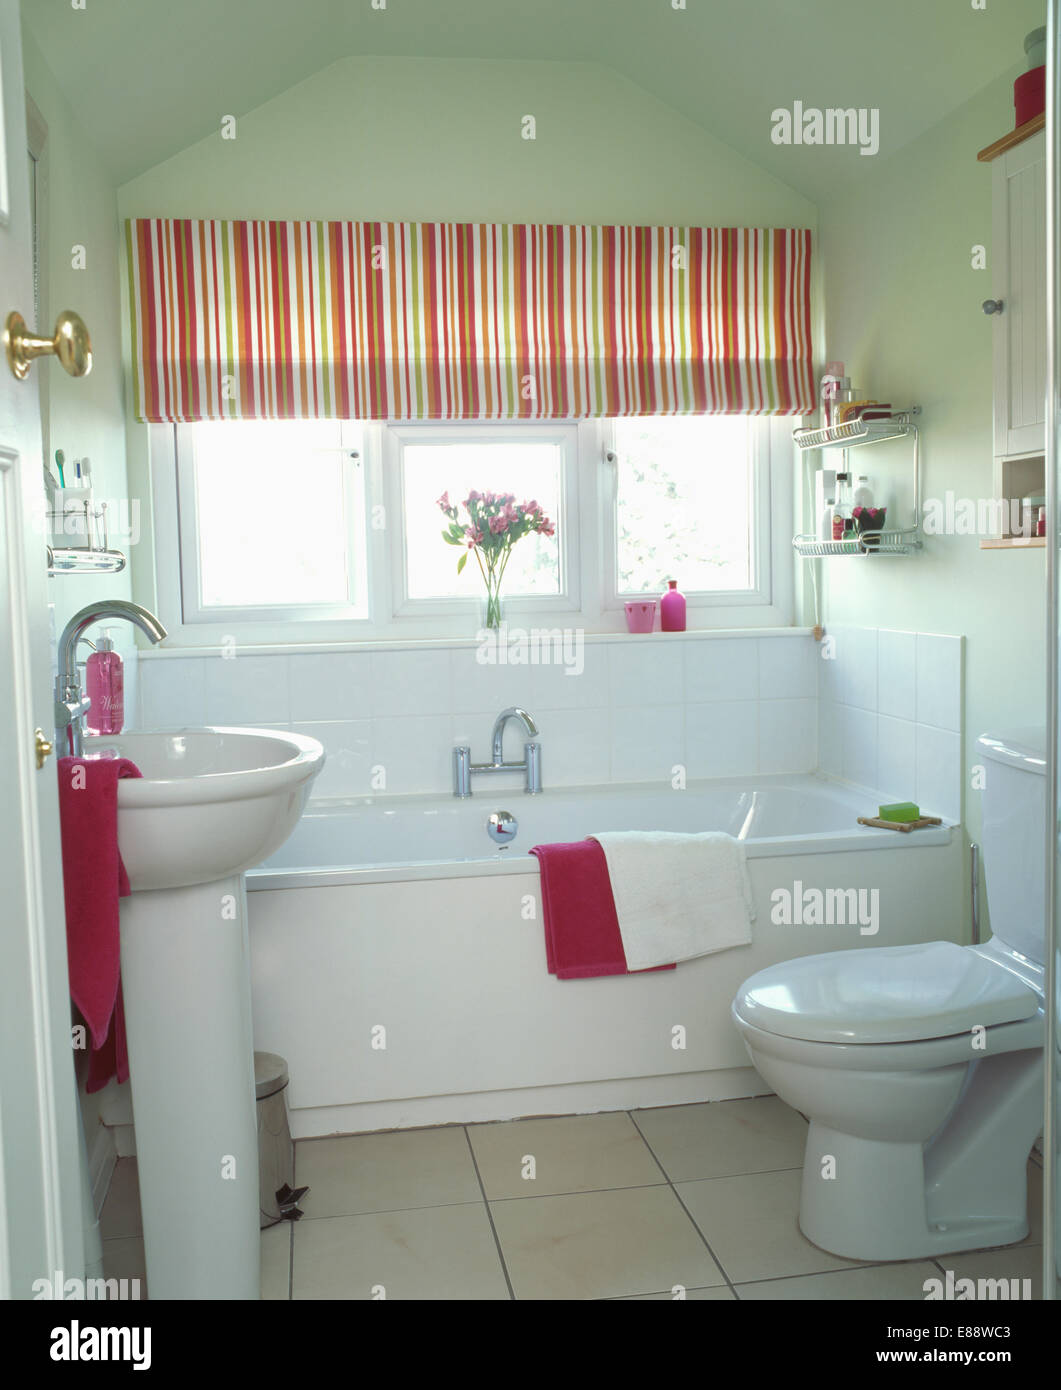 Rot gestreifte Blind über Bad im modernen weißen Badezimmer mit weißen Sockel Becken und rosa Handtücher Stockfoto